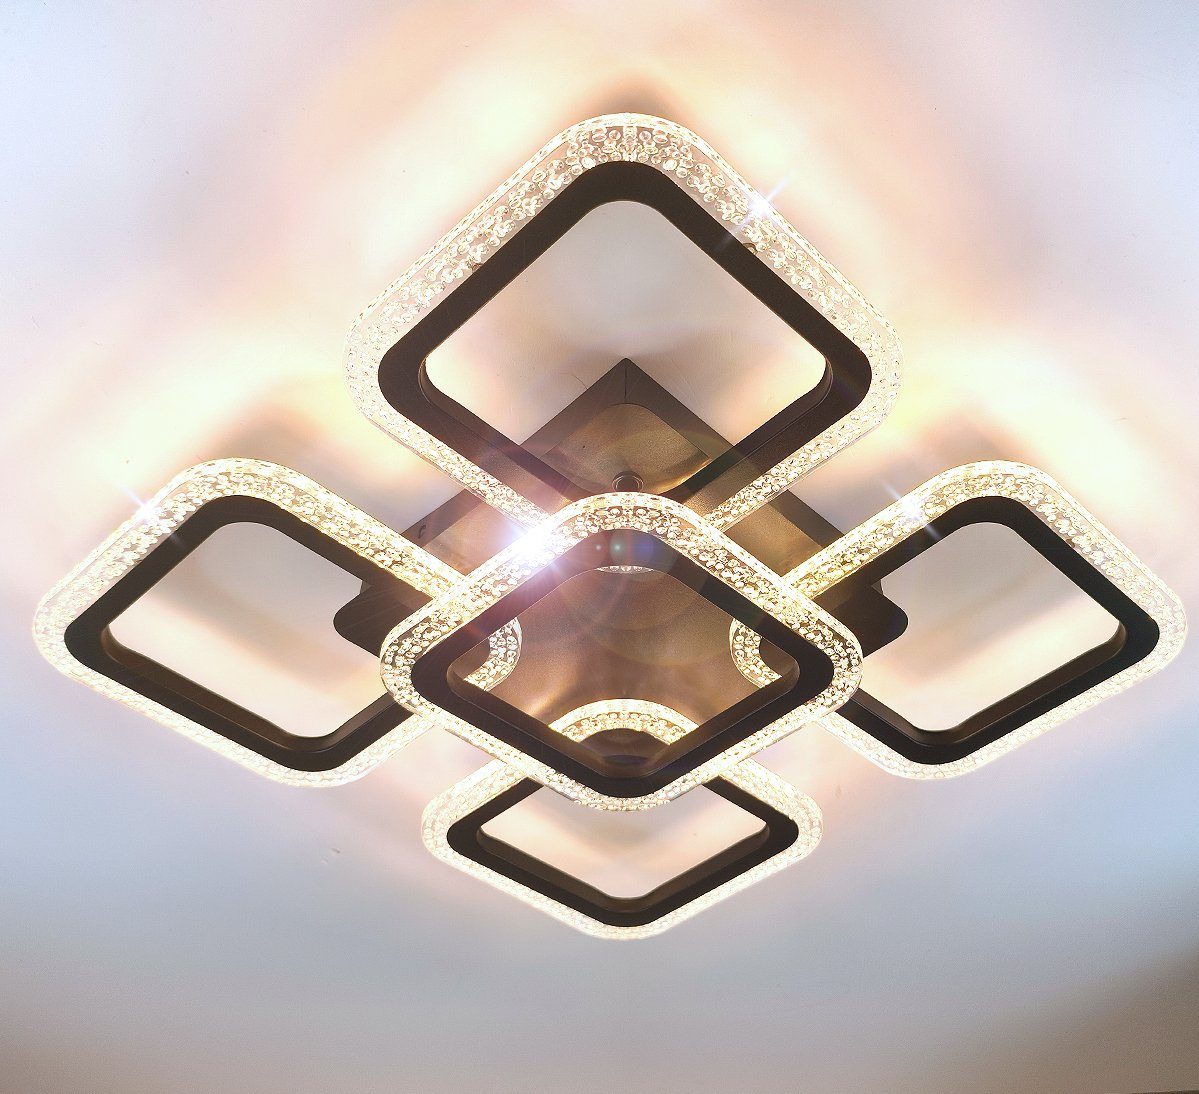 / Einstellungen LED Farbwechsel Schwarz glitzernd 55-83cm groß Neutralweiß Lewima per Warmweiß einstellbar, gespeichert, / 24-36W, XL-XXL Dimmbar funkelnd Fernbedienung, Deckenleuchte Kaltweiß Deckenlampe werden